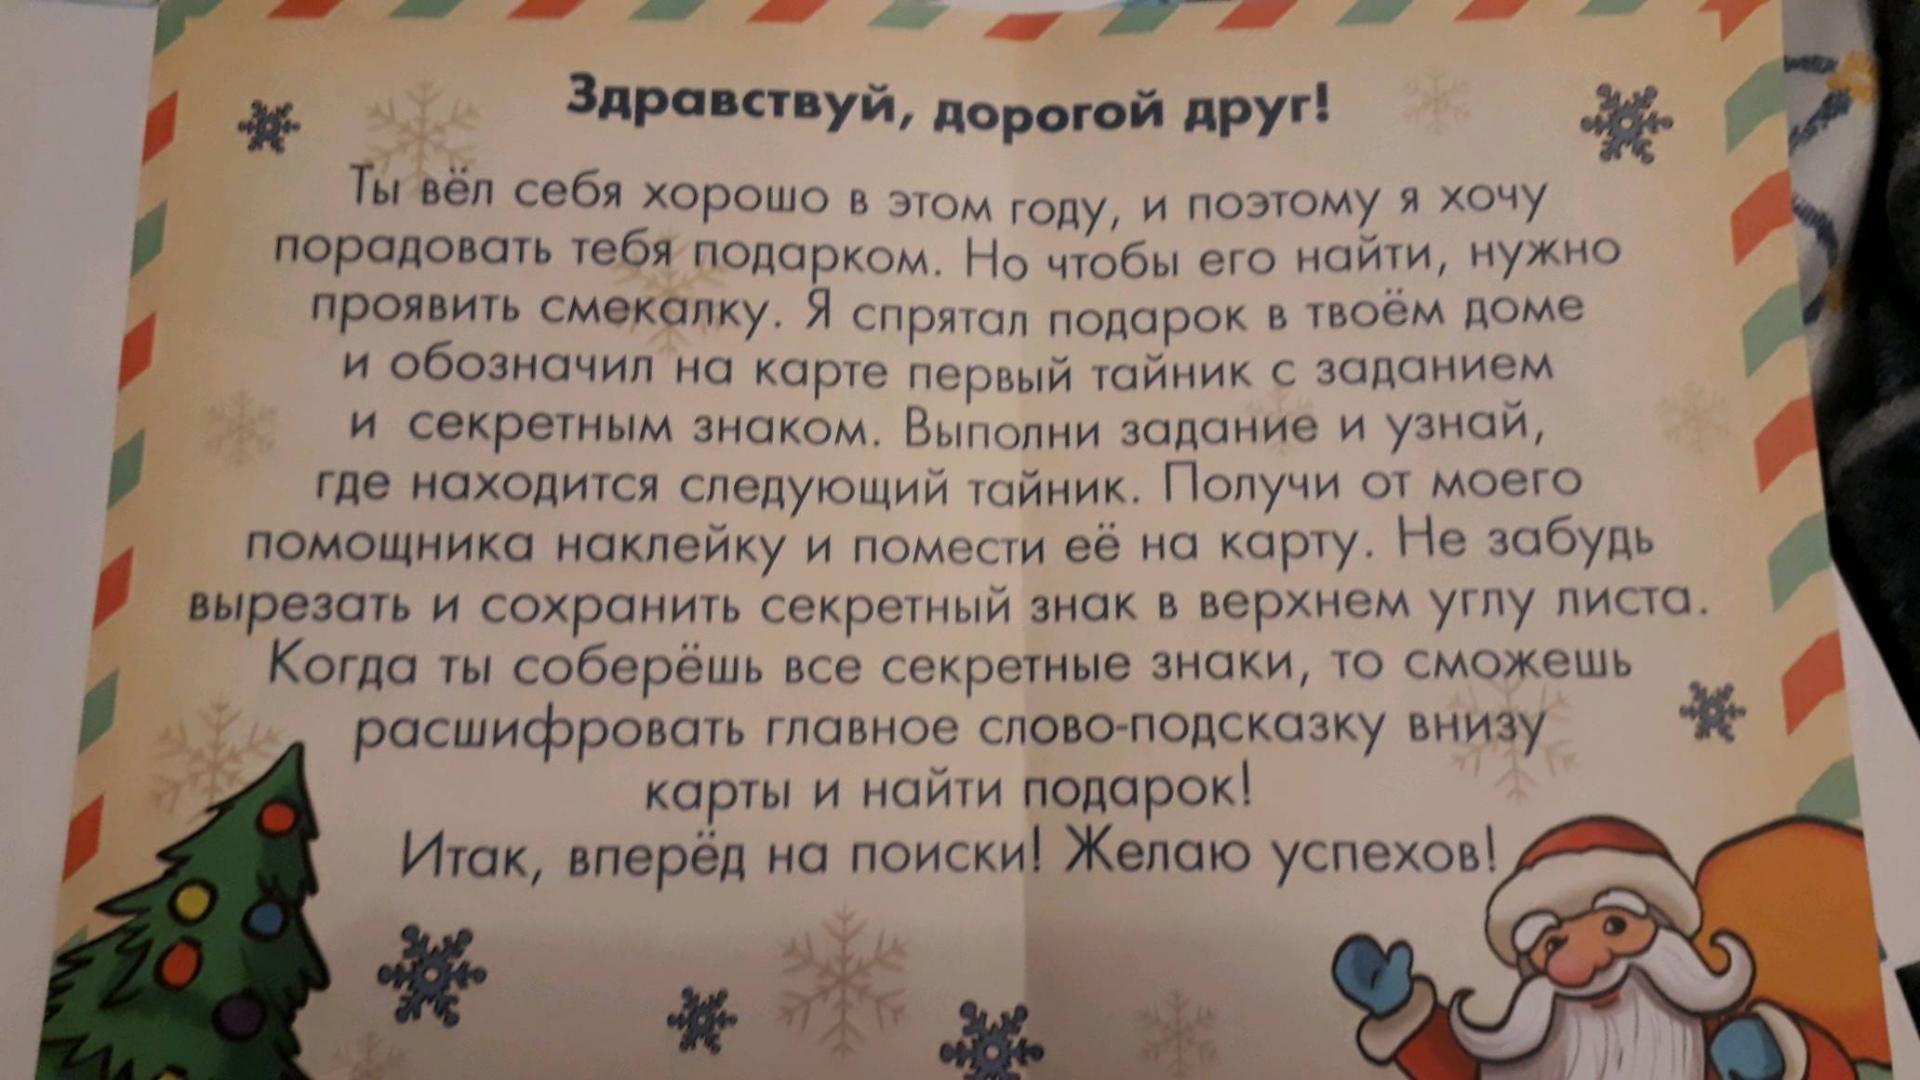 Домашний квест на новый год для детей с поиском подарка «проказник гринч» (от 6-10 лет) — zavodila-kvest